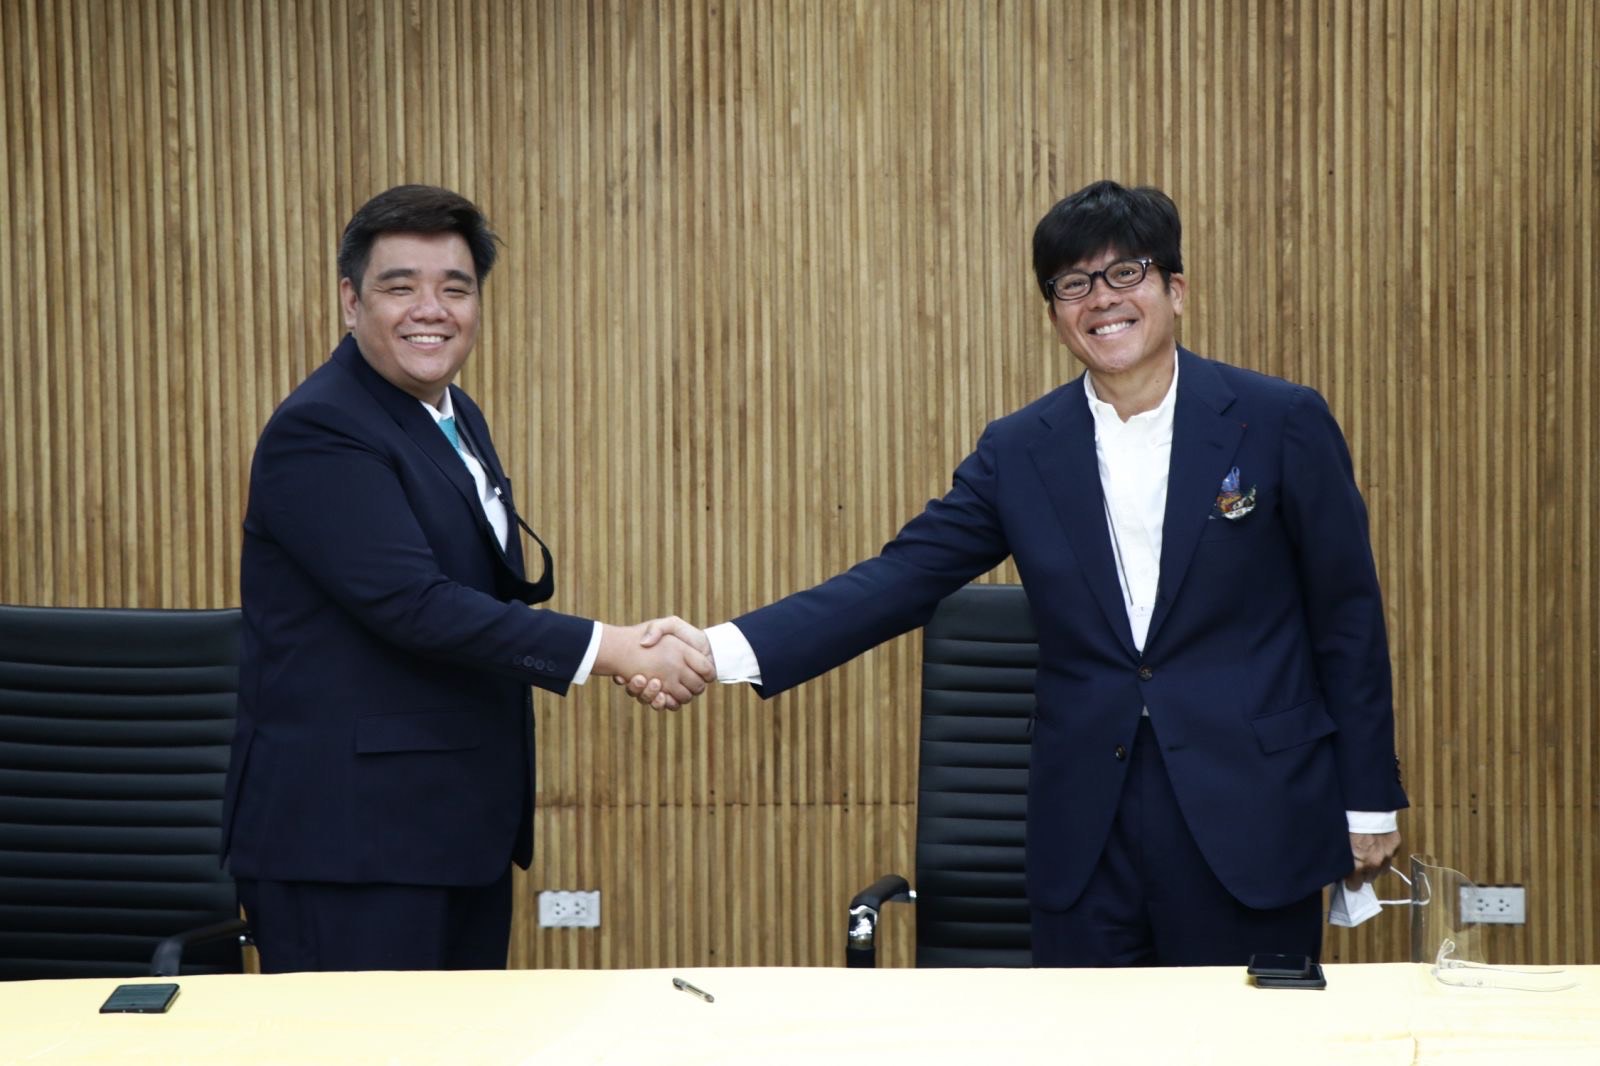 Steve Sy, CEO Great Deals, dan William Chiongban, CEO Fast Group, menandatangani kontrak kemitraan strategis perusahaan